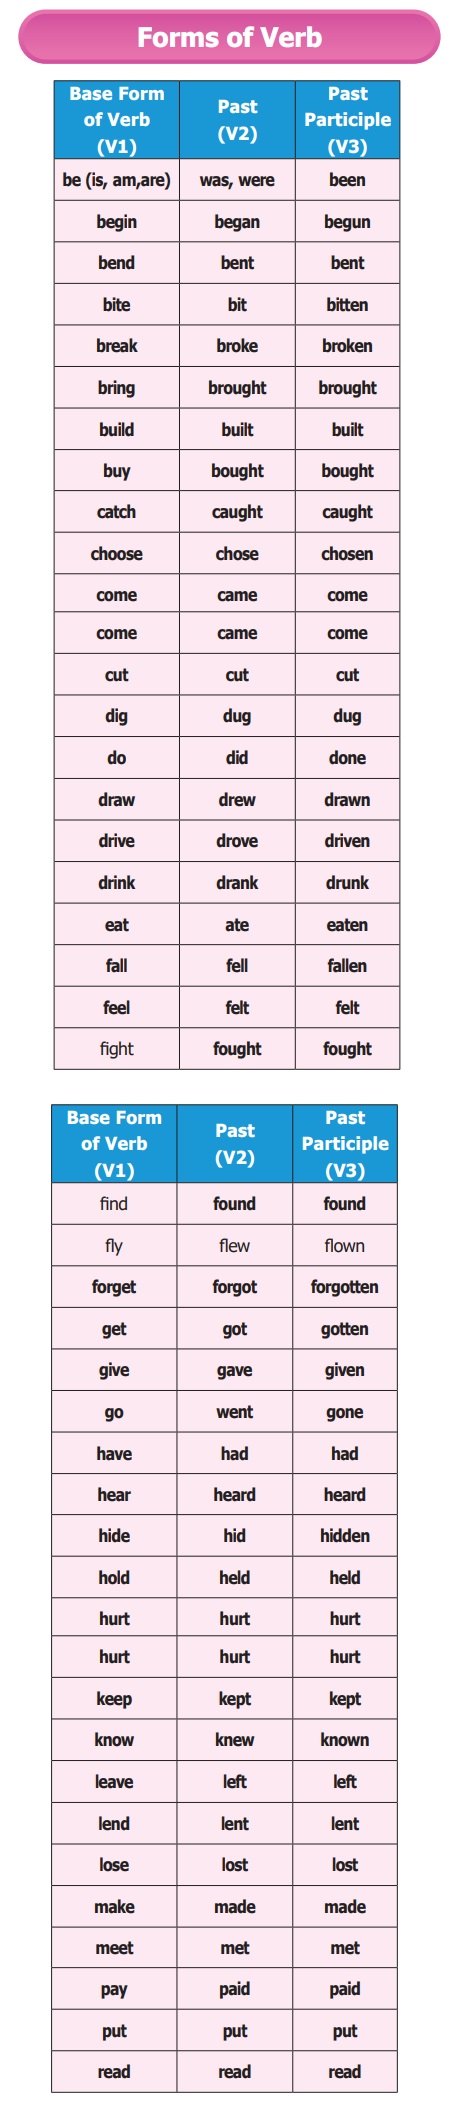 Verb Forms, Part 8, Topics4Exams